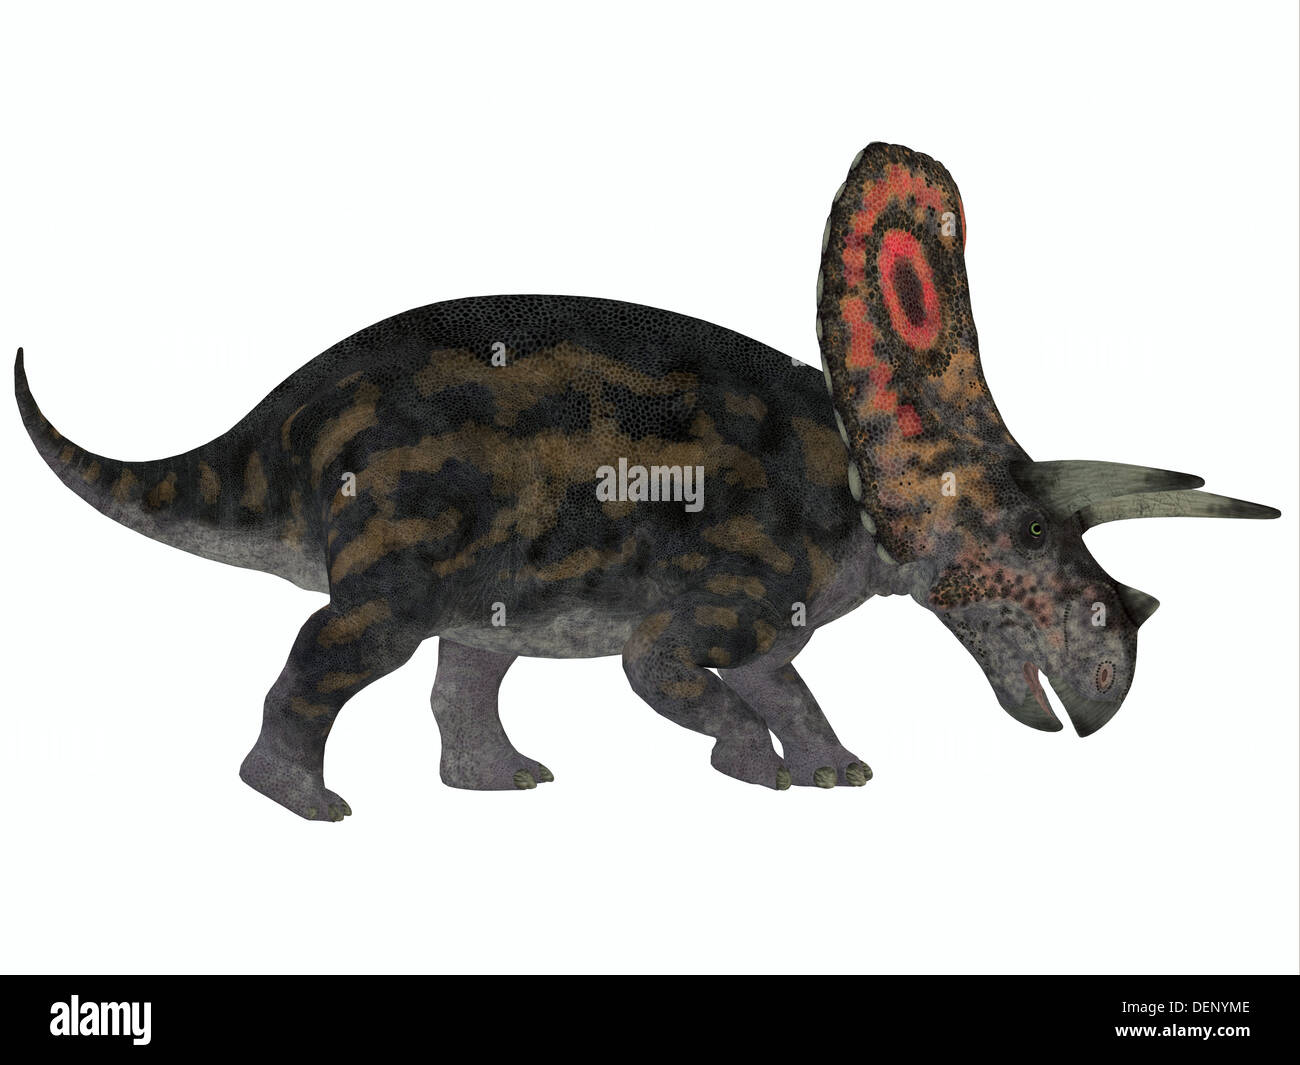 Torosaurus tenía el mayor cráneos de cualquier animal terrestre conocido. Era dinosaurio herbívoro de finales del período Cretácico. Foto de stock